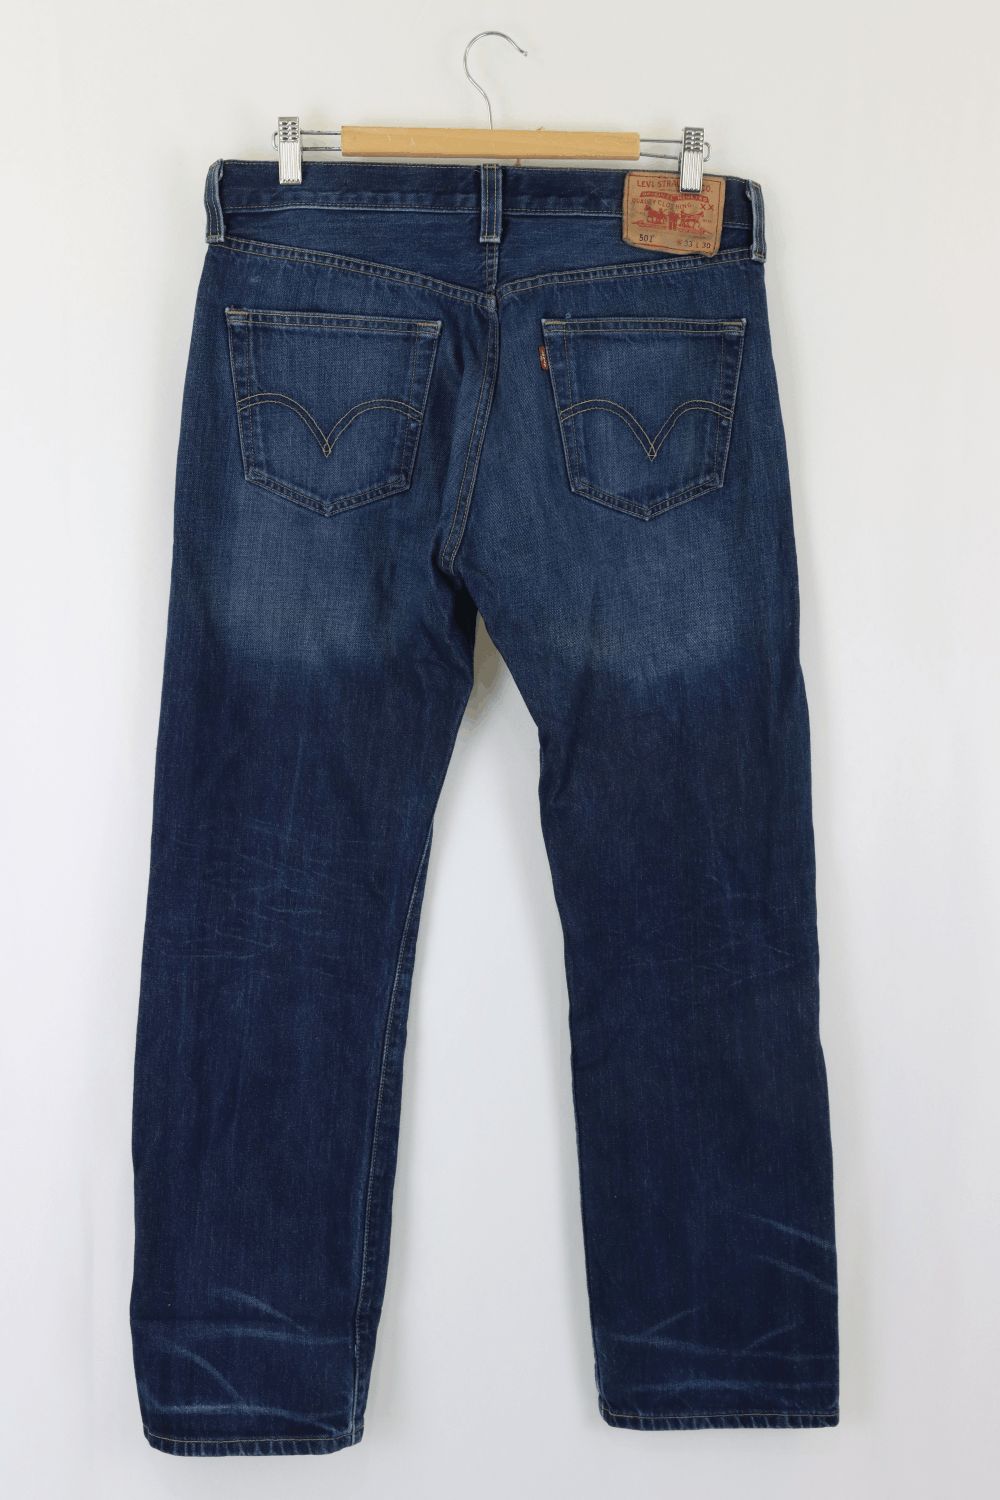 Levis Original Blue Jeans L